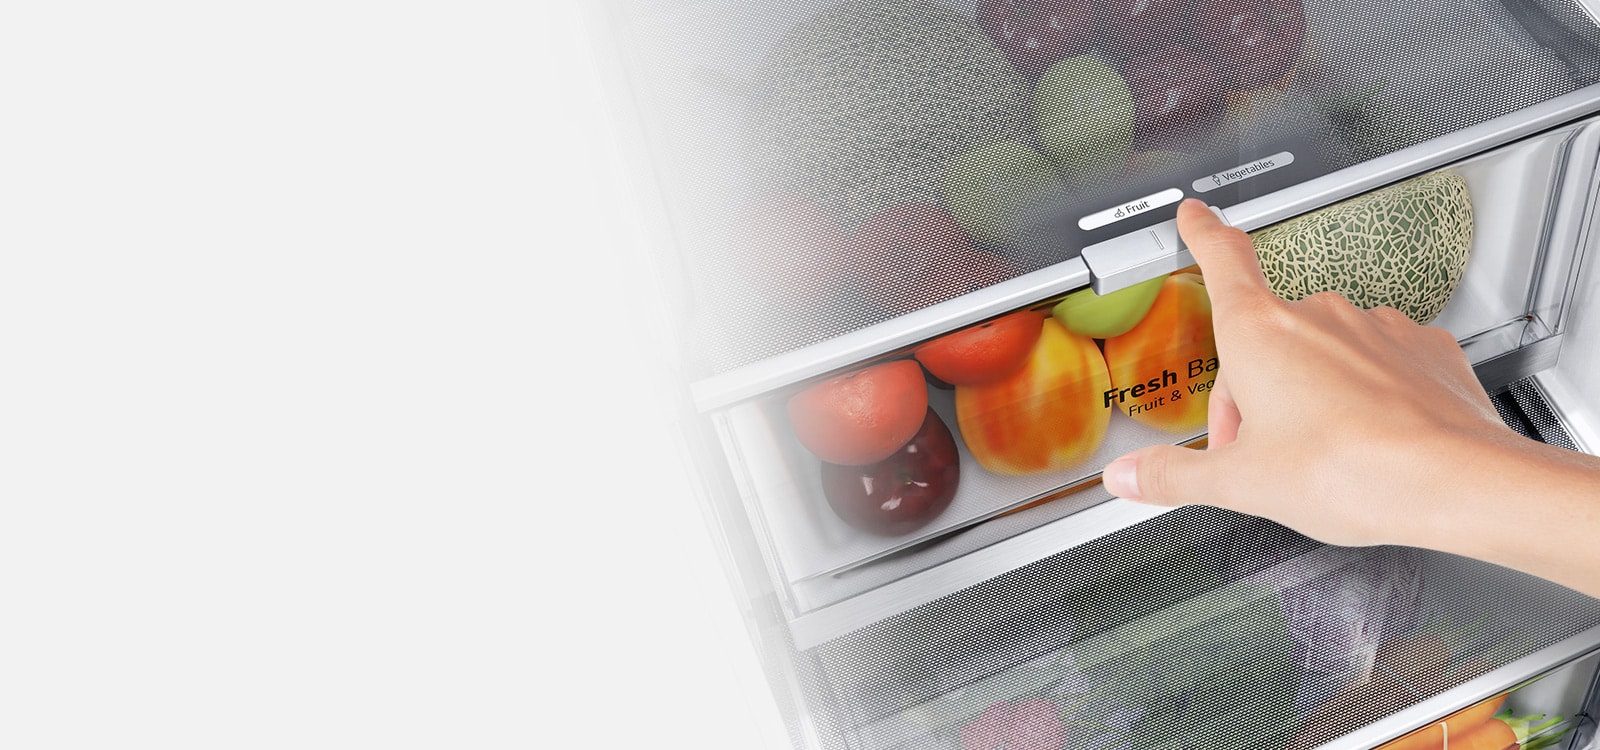 Нижние ящики холодильника наполнены разноцветными свежими продуктами. Изображение увеличивается на рычаге управления, позволяющем выбрать оптимальный уровень влажности для сохранения свежести продукции.